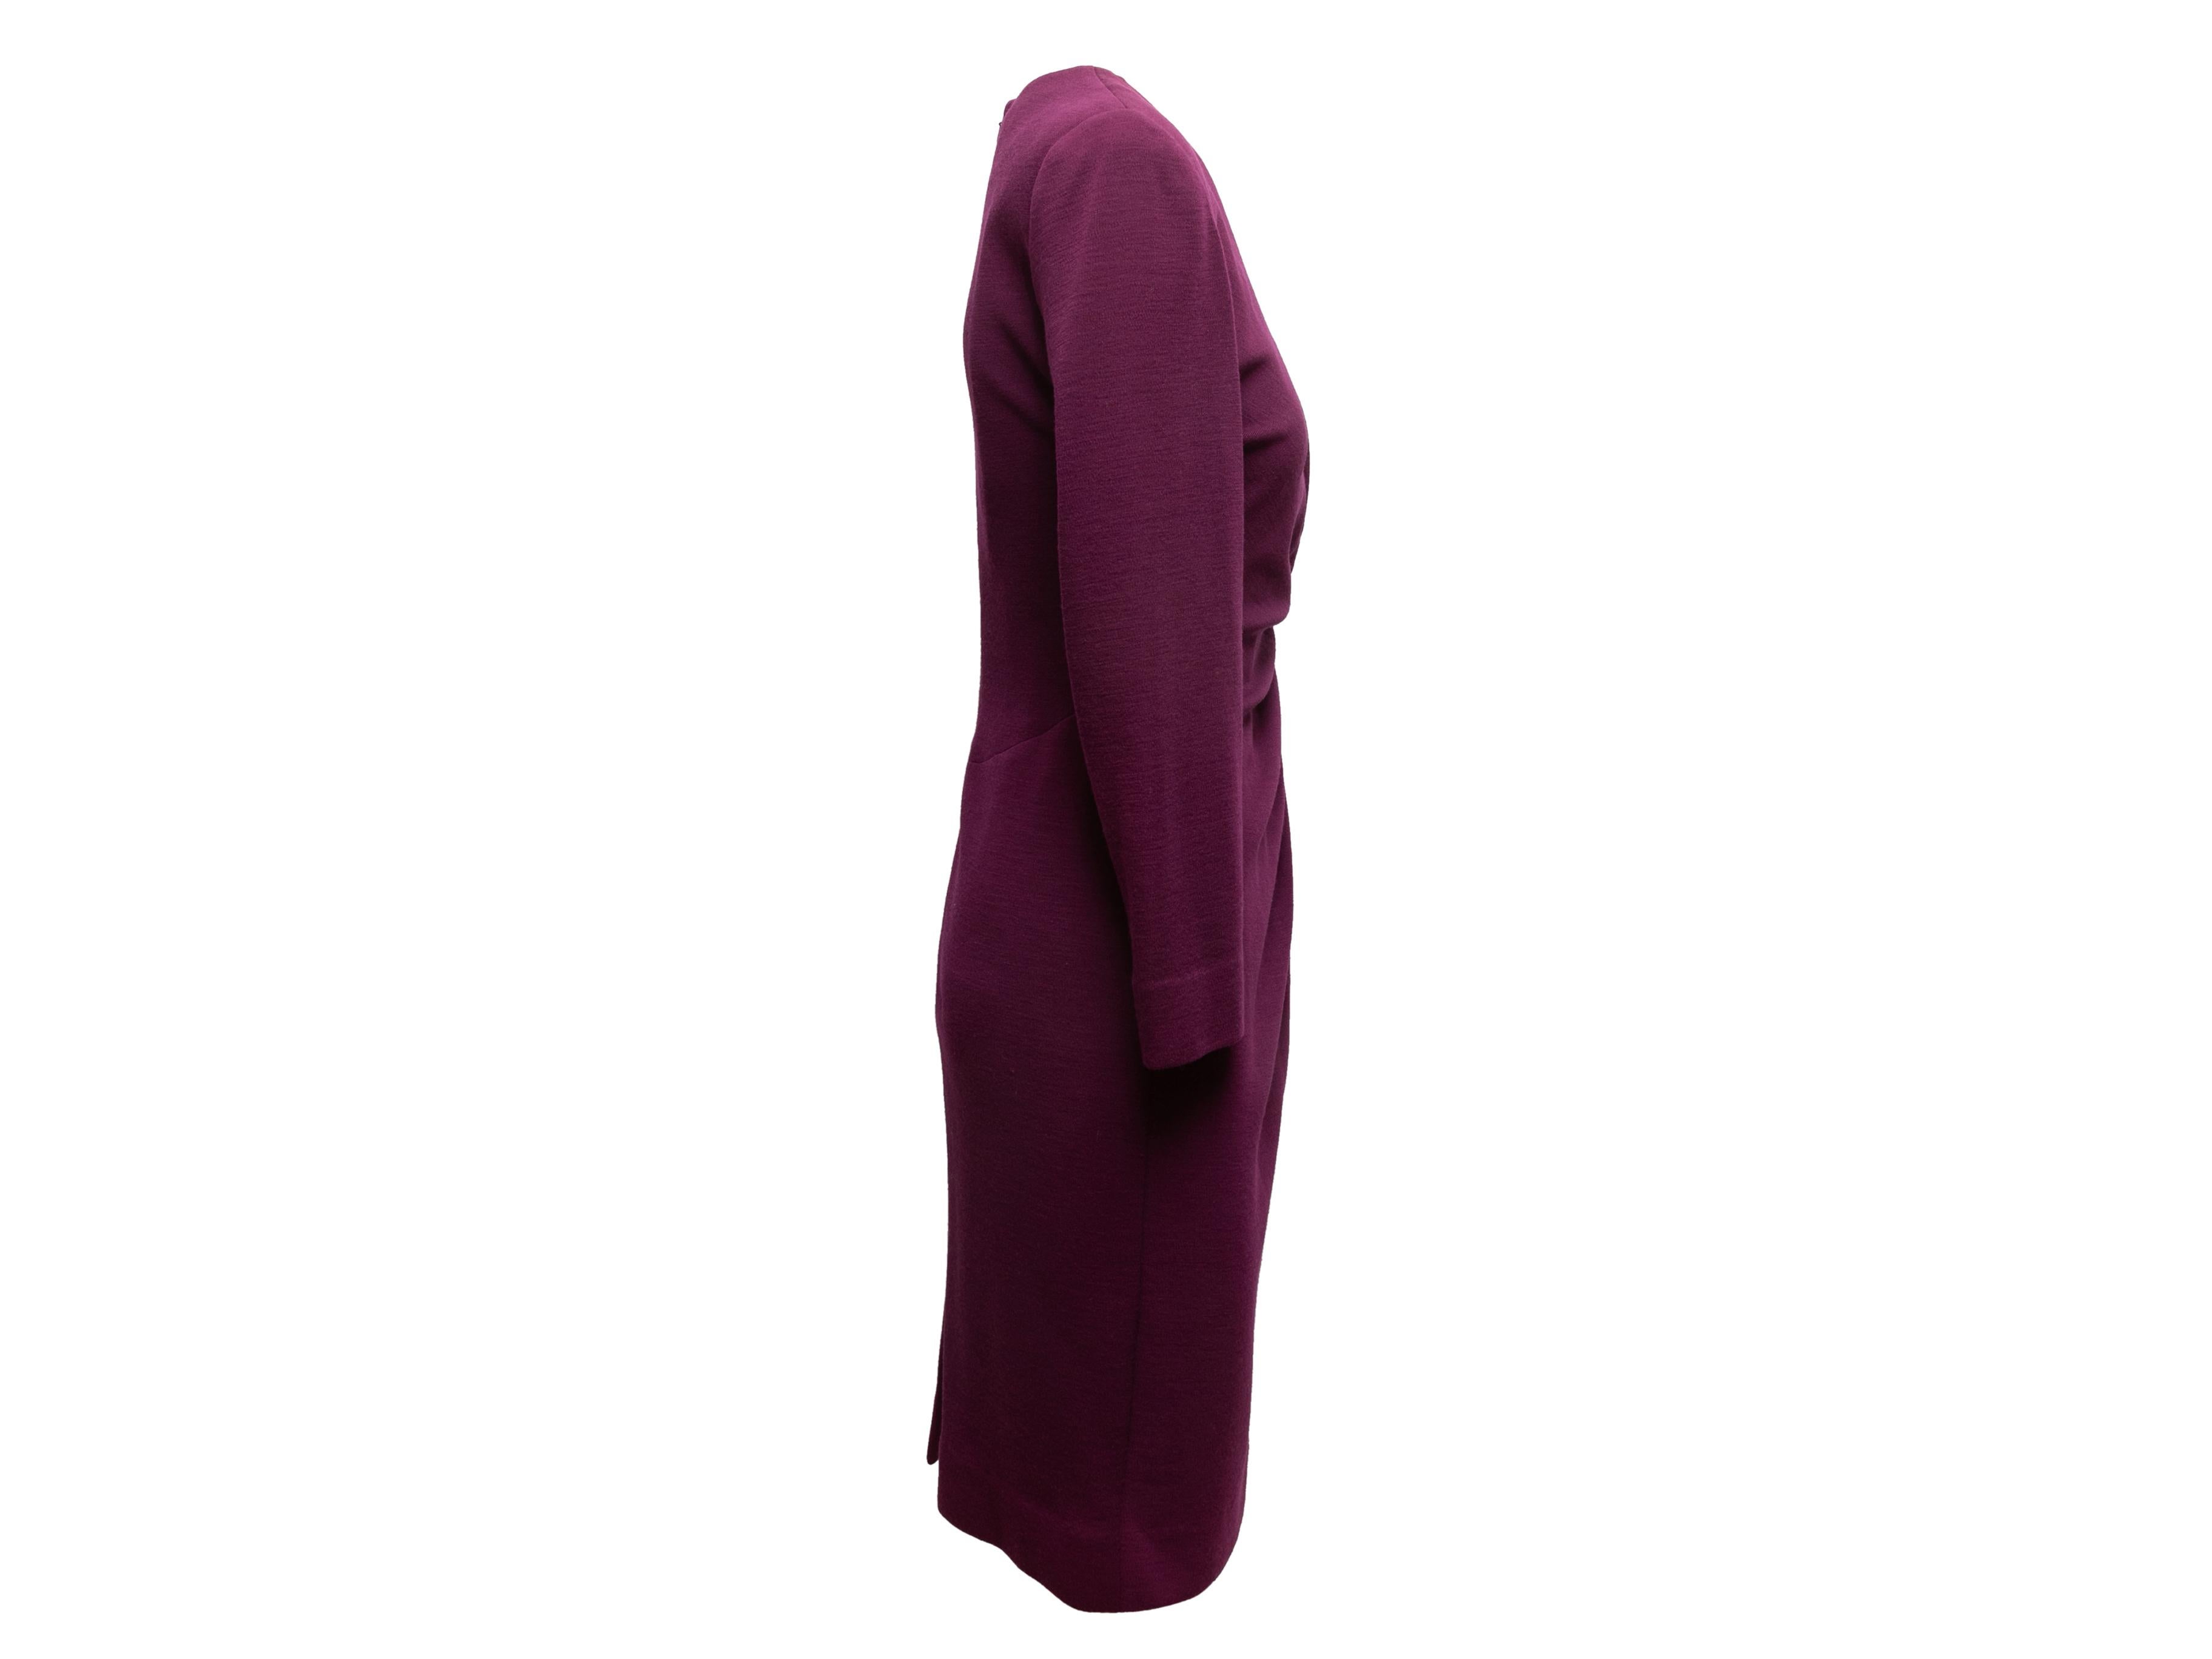  Langärmeliges Kleid aus auberginefarbener Wolle von Hanae Mori. Ca. 1980er Jahre V-Ausschnitt. Seitliche Raffung an der Taille. Reißverschluss am Rücken. 33